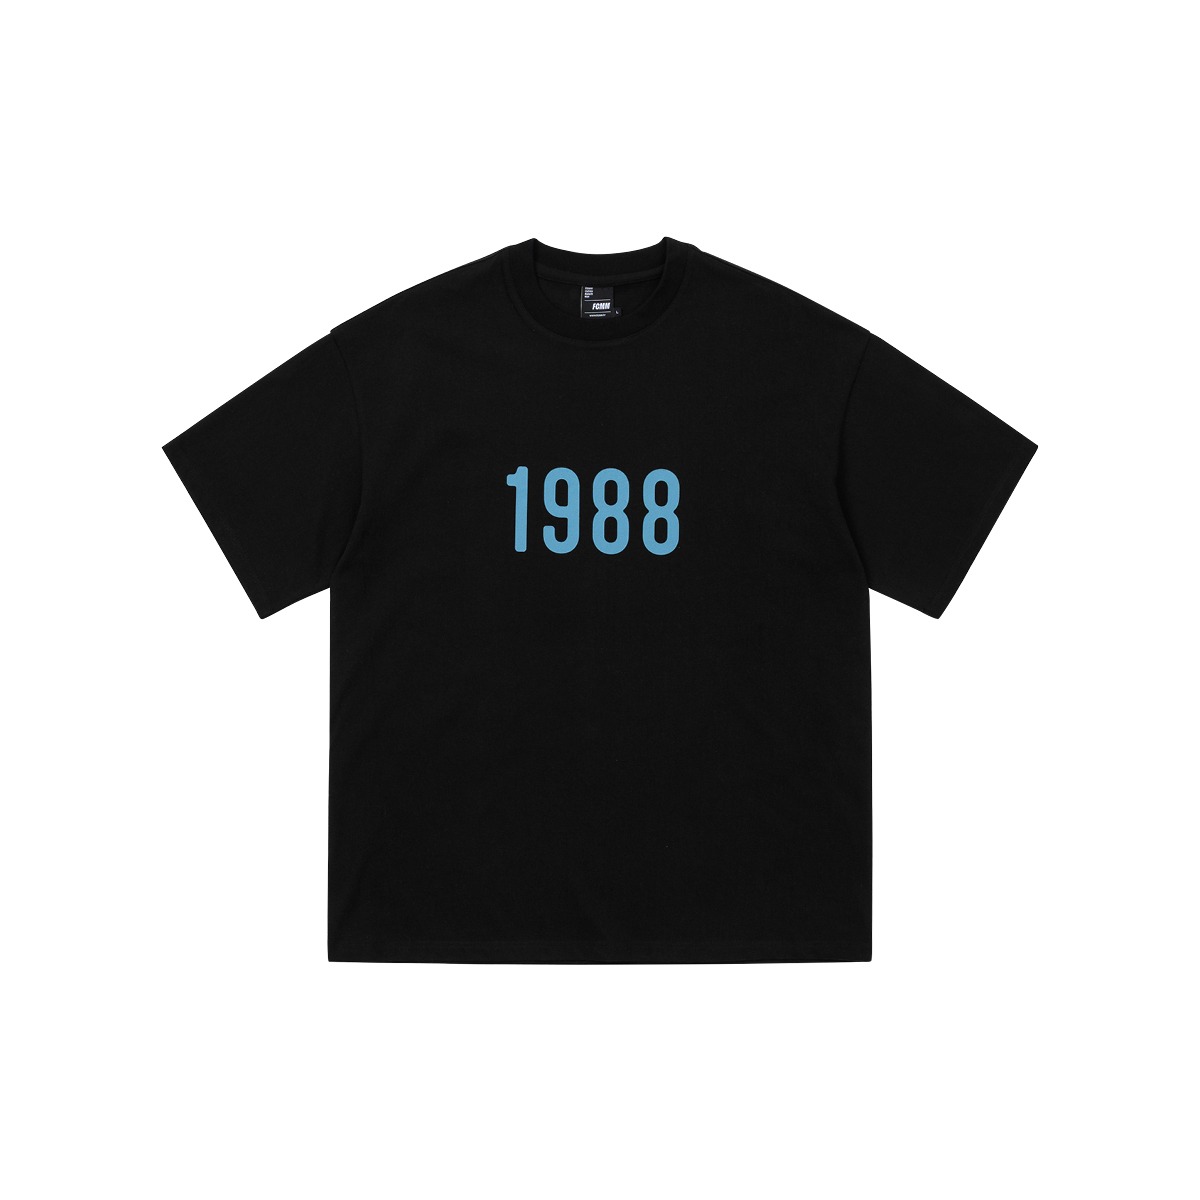 (04월 22일 순차발송)1988 레트로 티셔츠 - 블랙